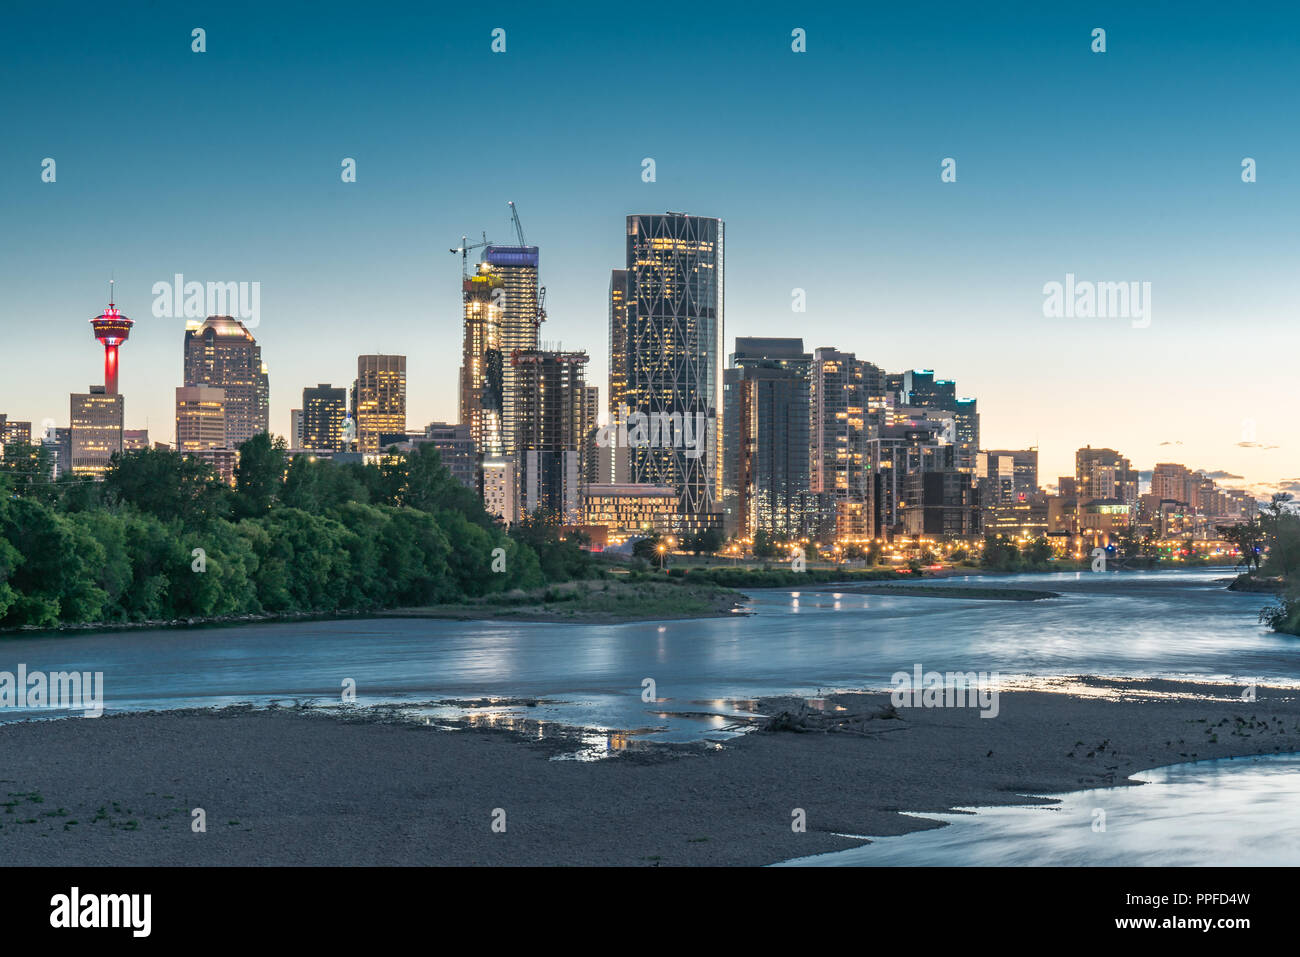 Night skyline of the city Calgary, Alberta, Canada along the Bow River Stock Photo